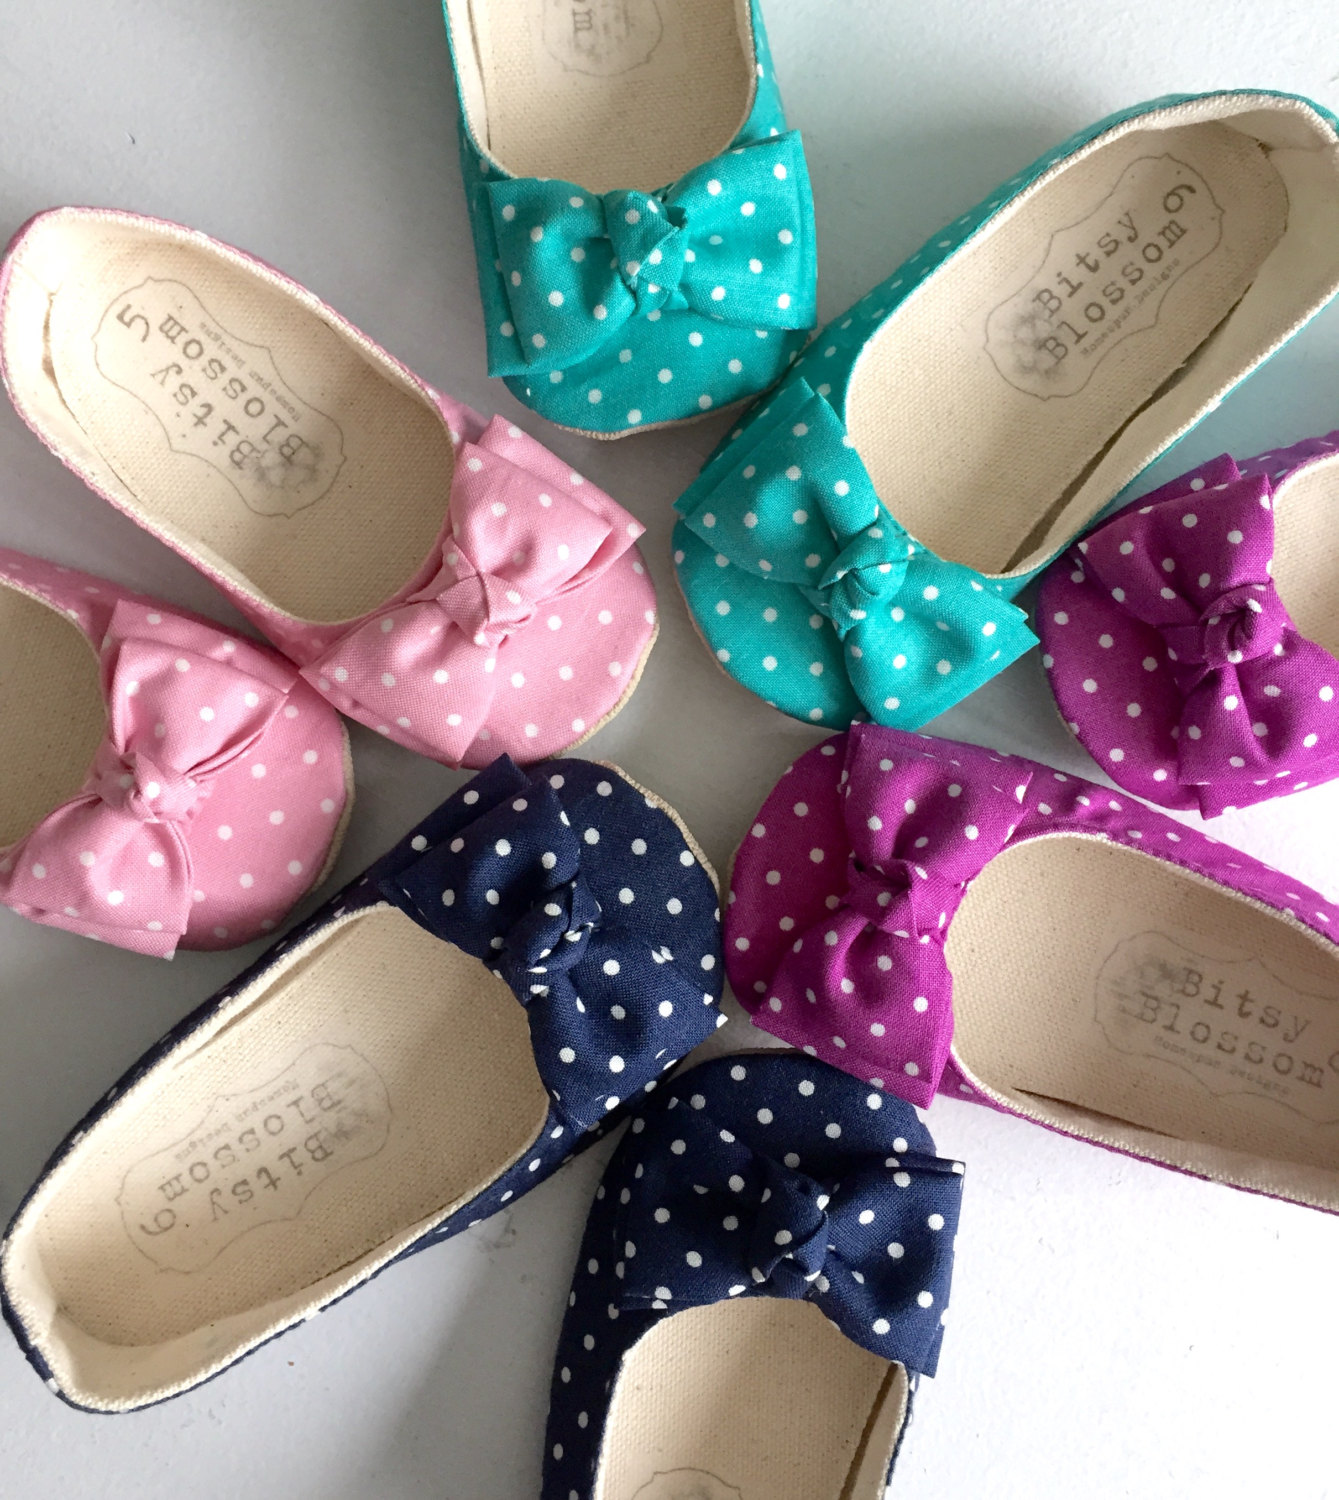 colorful polka dot flower girl shoes | handmade flower girl shoes via http://emmalinebride.com/spring/handmade-flower-girl-shoes/